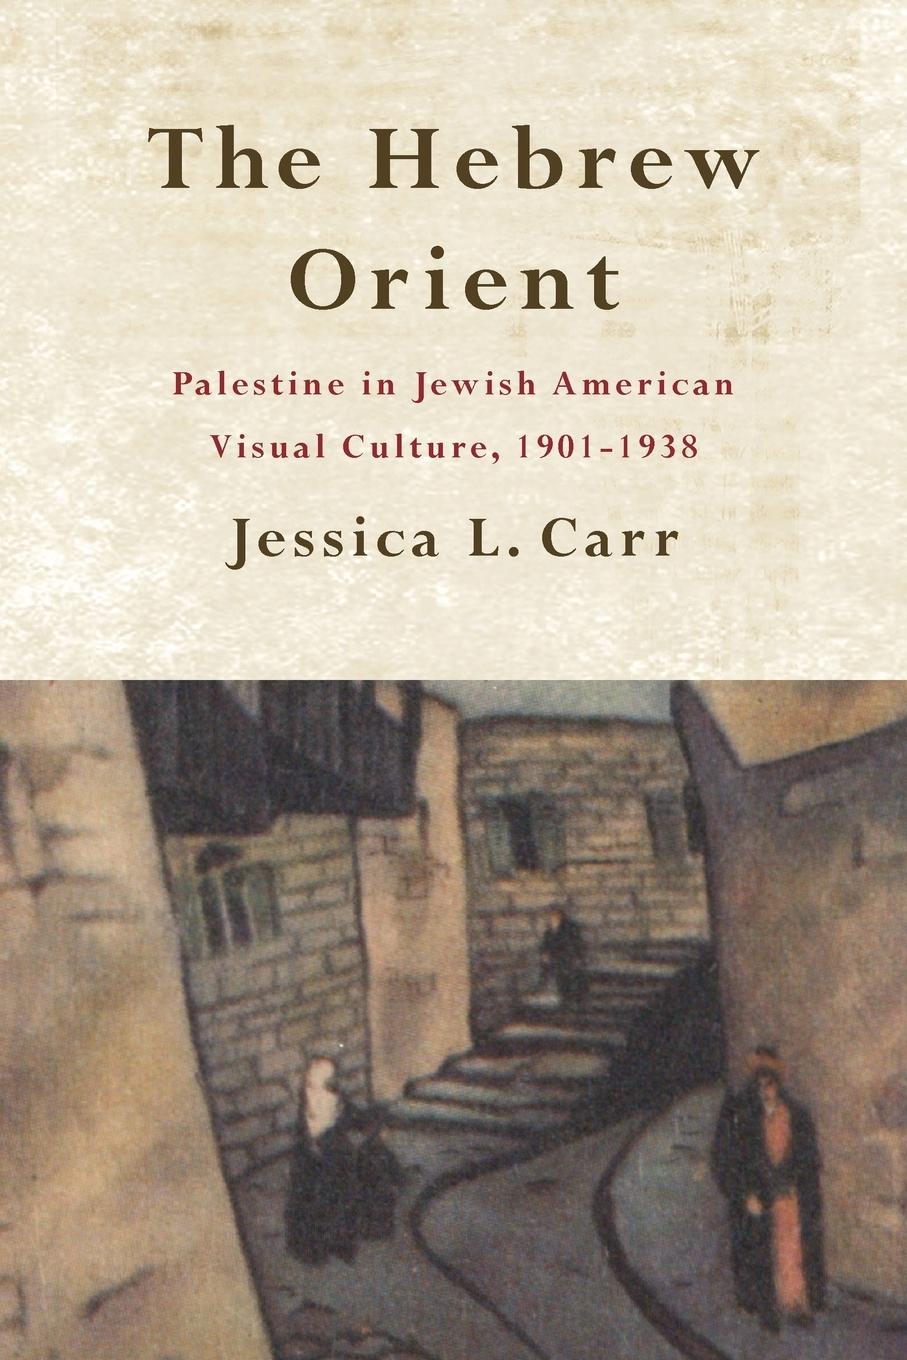 Carte Hebrew Orient, The 